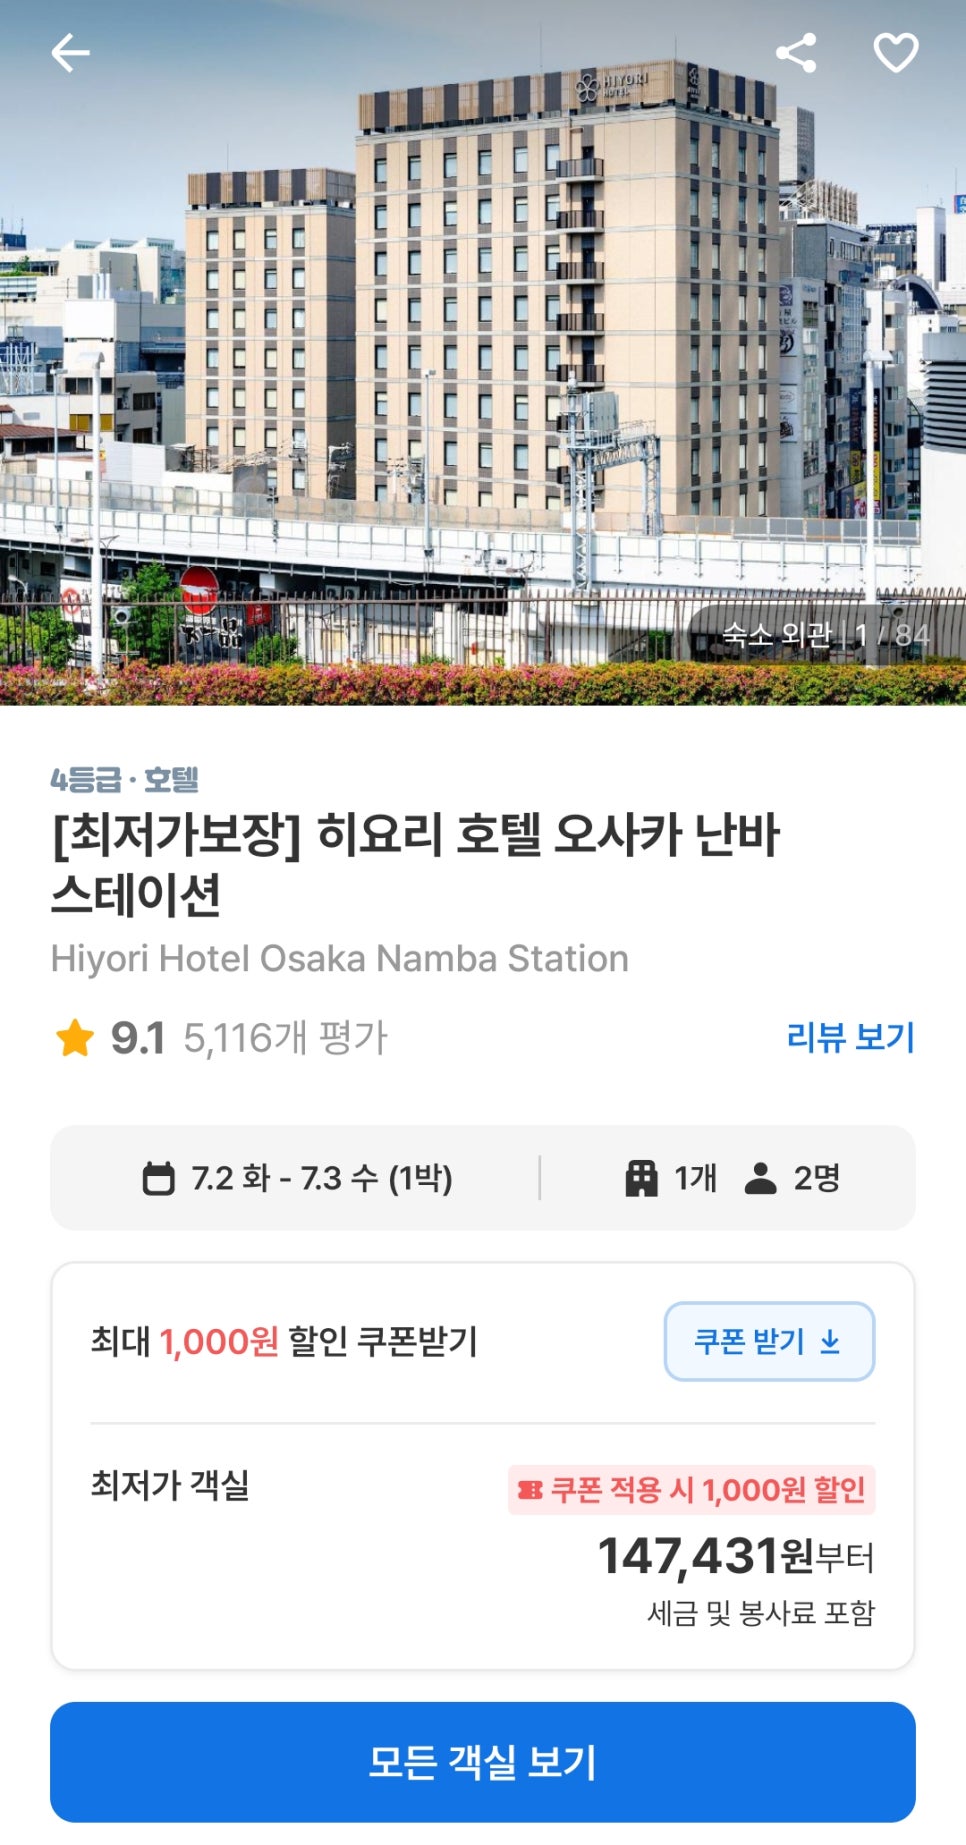 일본 오사카 숙소 추천 최고의 위치 히요리 호텔 오사카 난바 스테이션